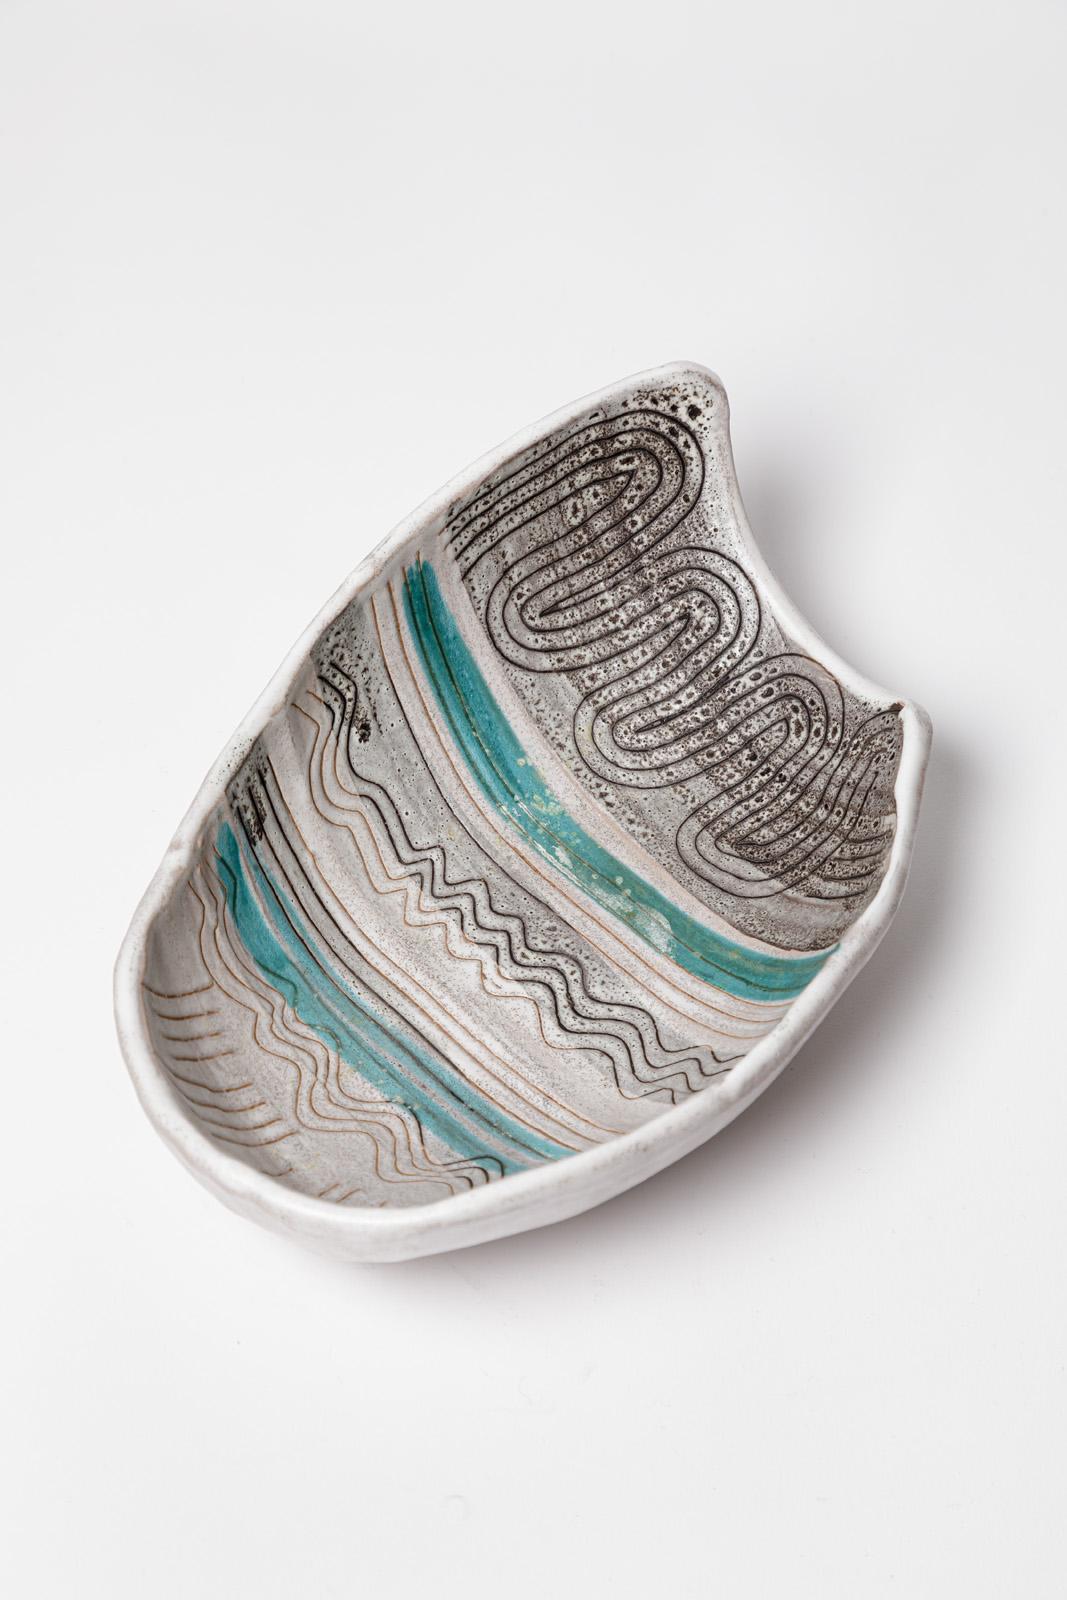 Dekoschale oder Teller aus grauer und farbiger Keramik von Jean Austruy, Design 1950 (20. Jahrhundert) im Angebot